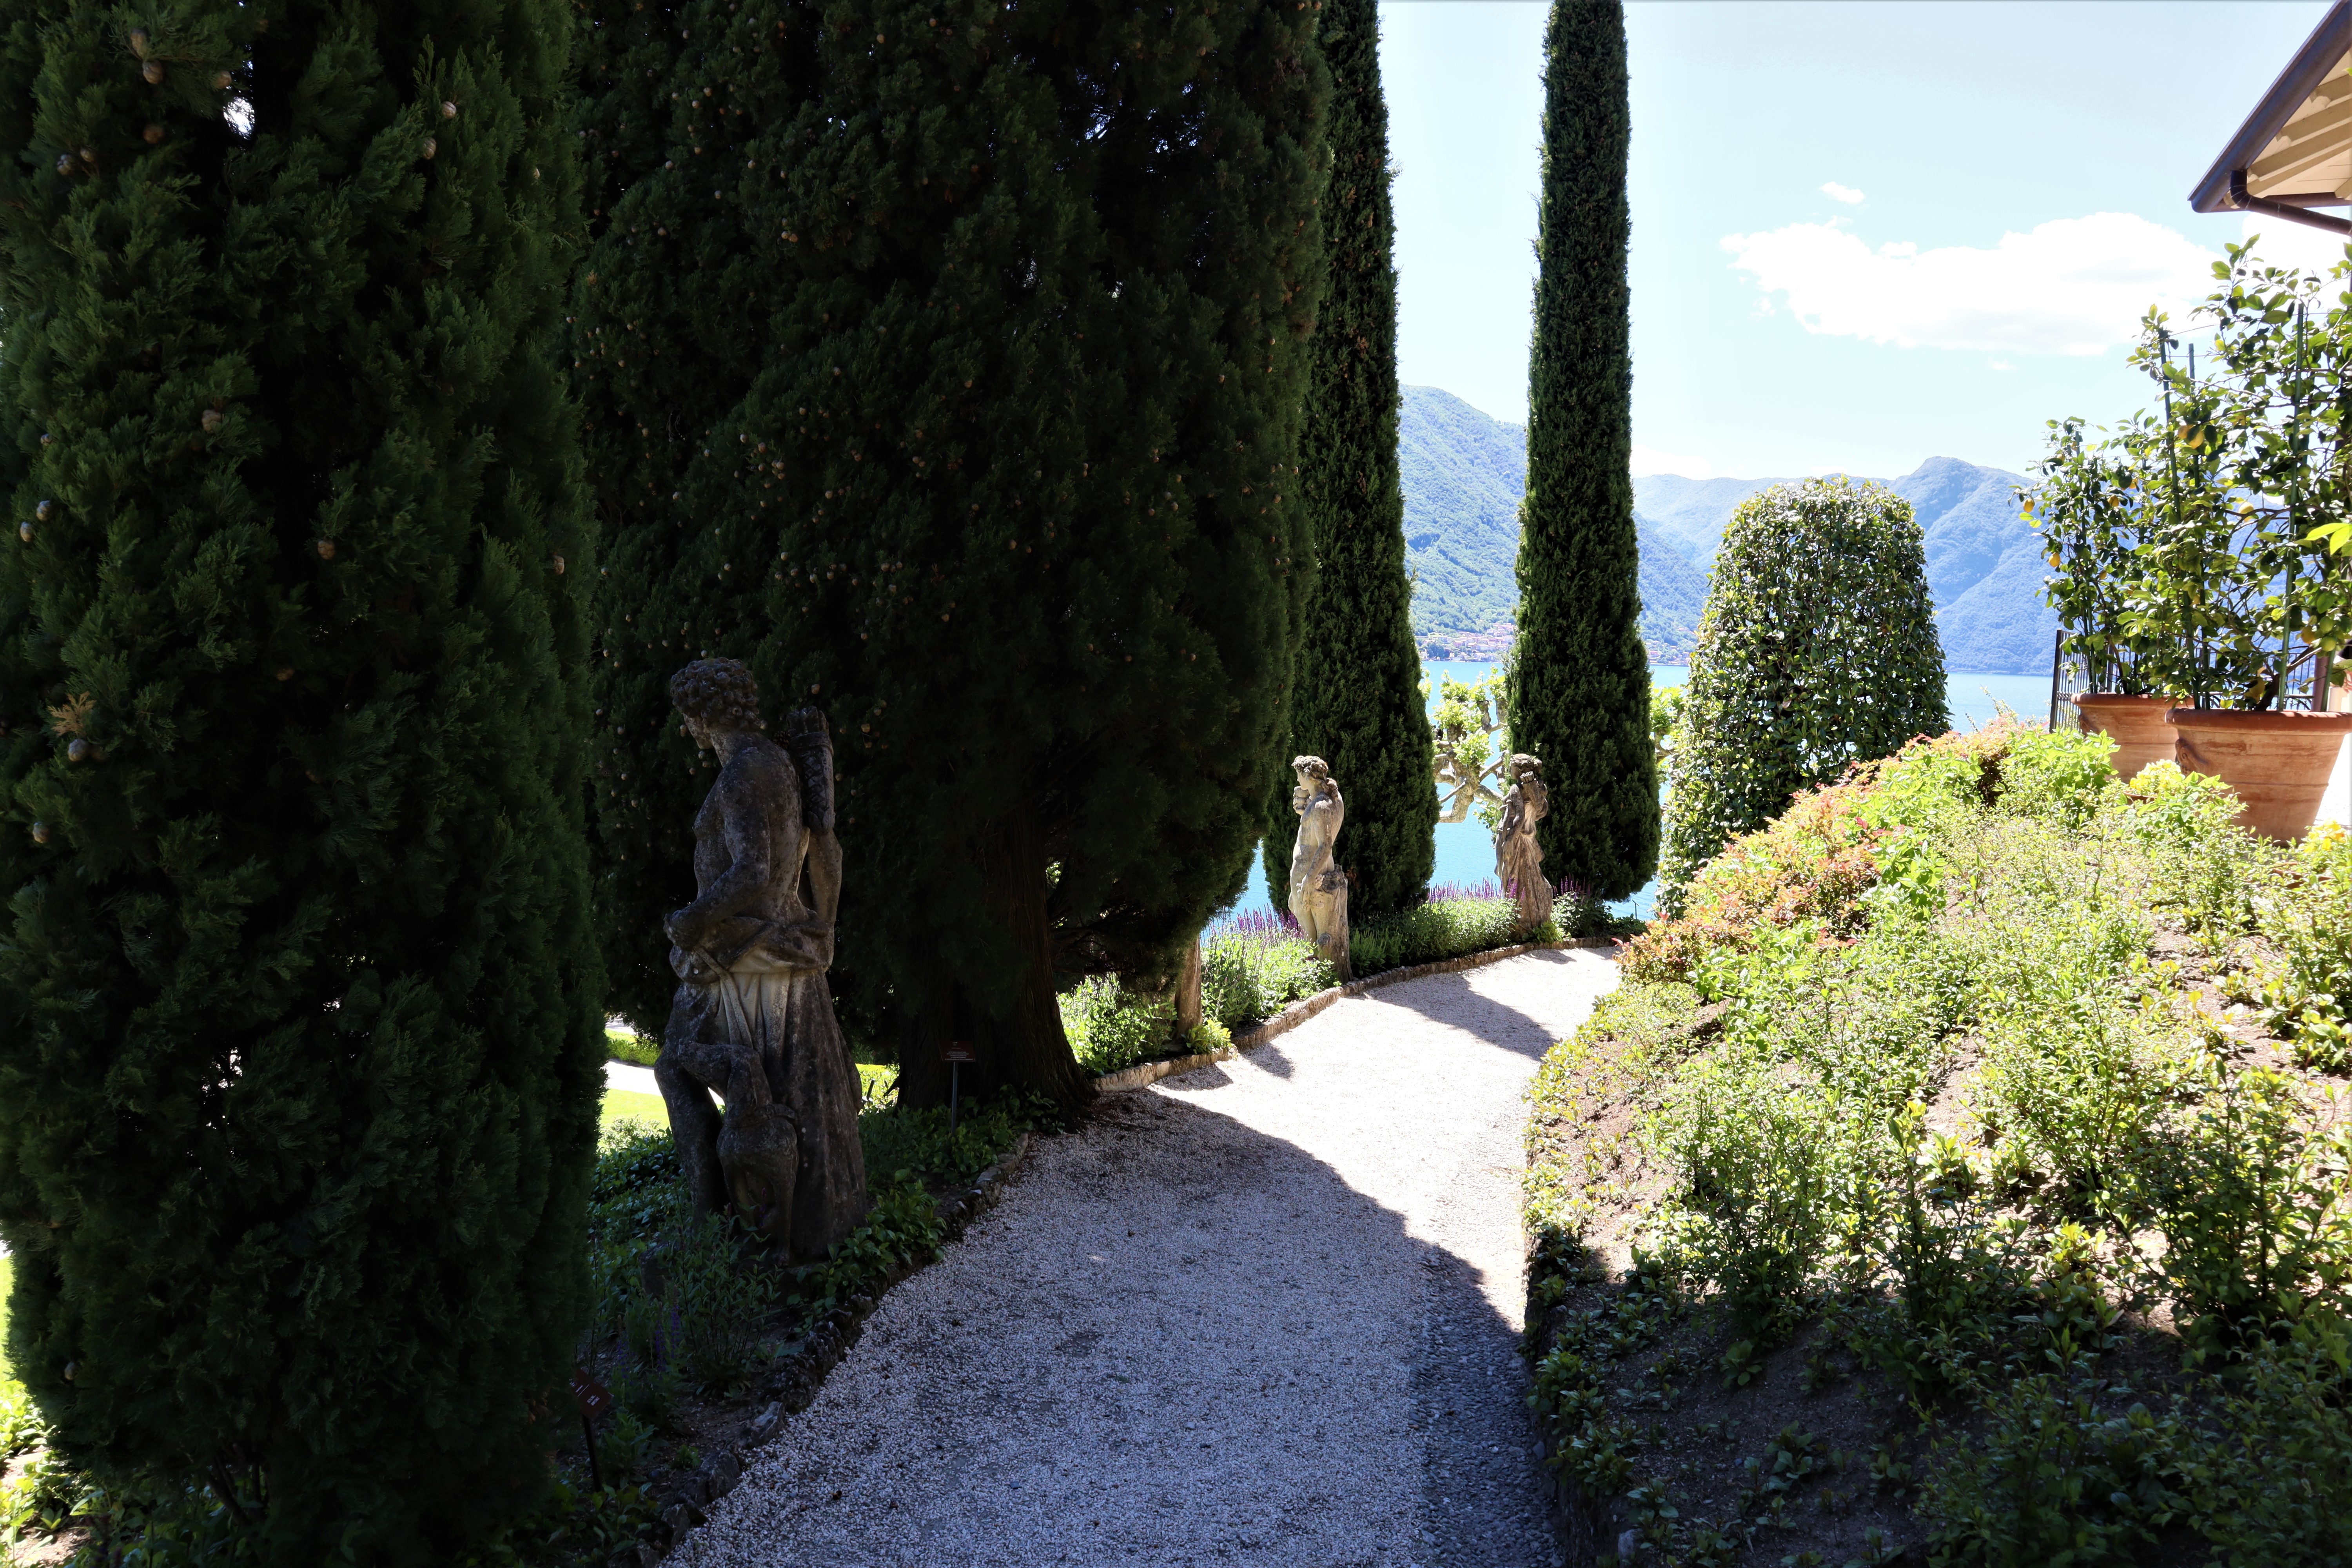 Villa del Balbianello, photo by e-borghi